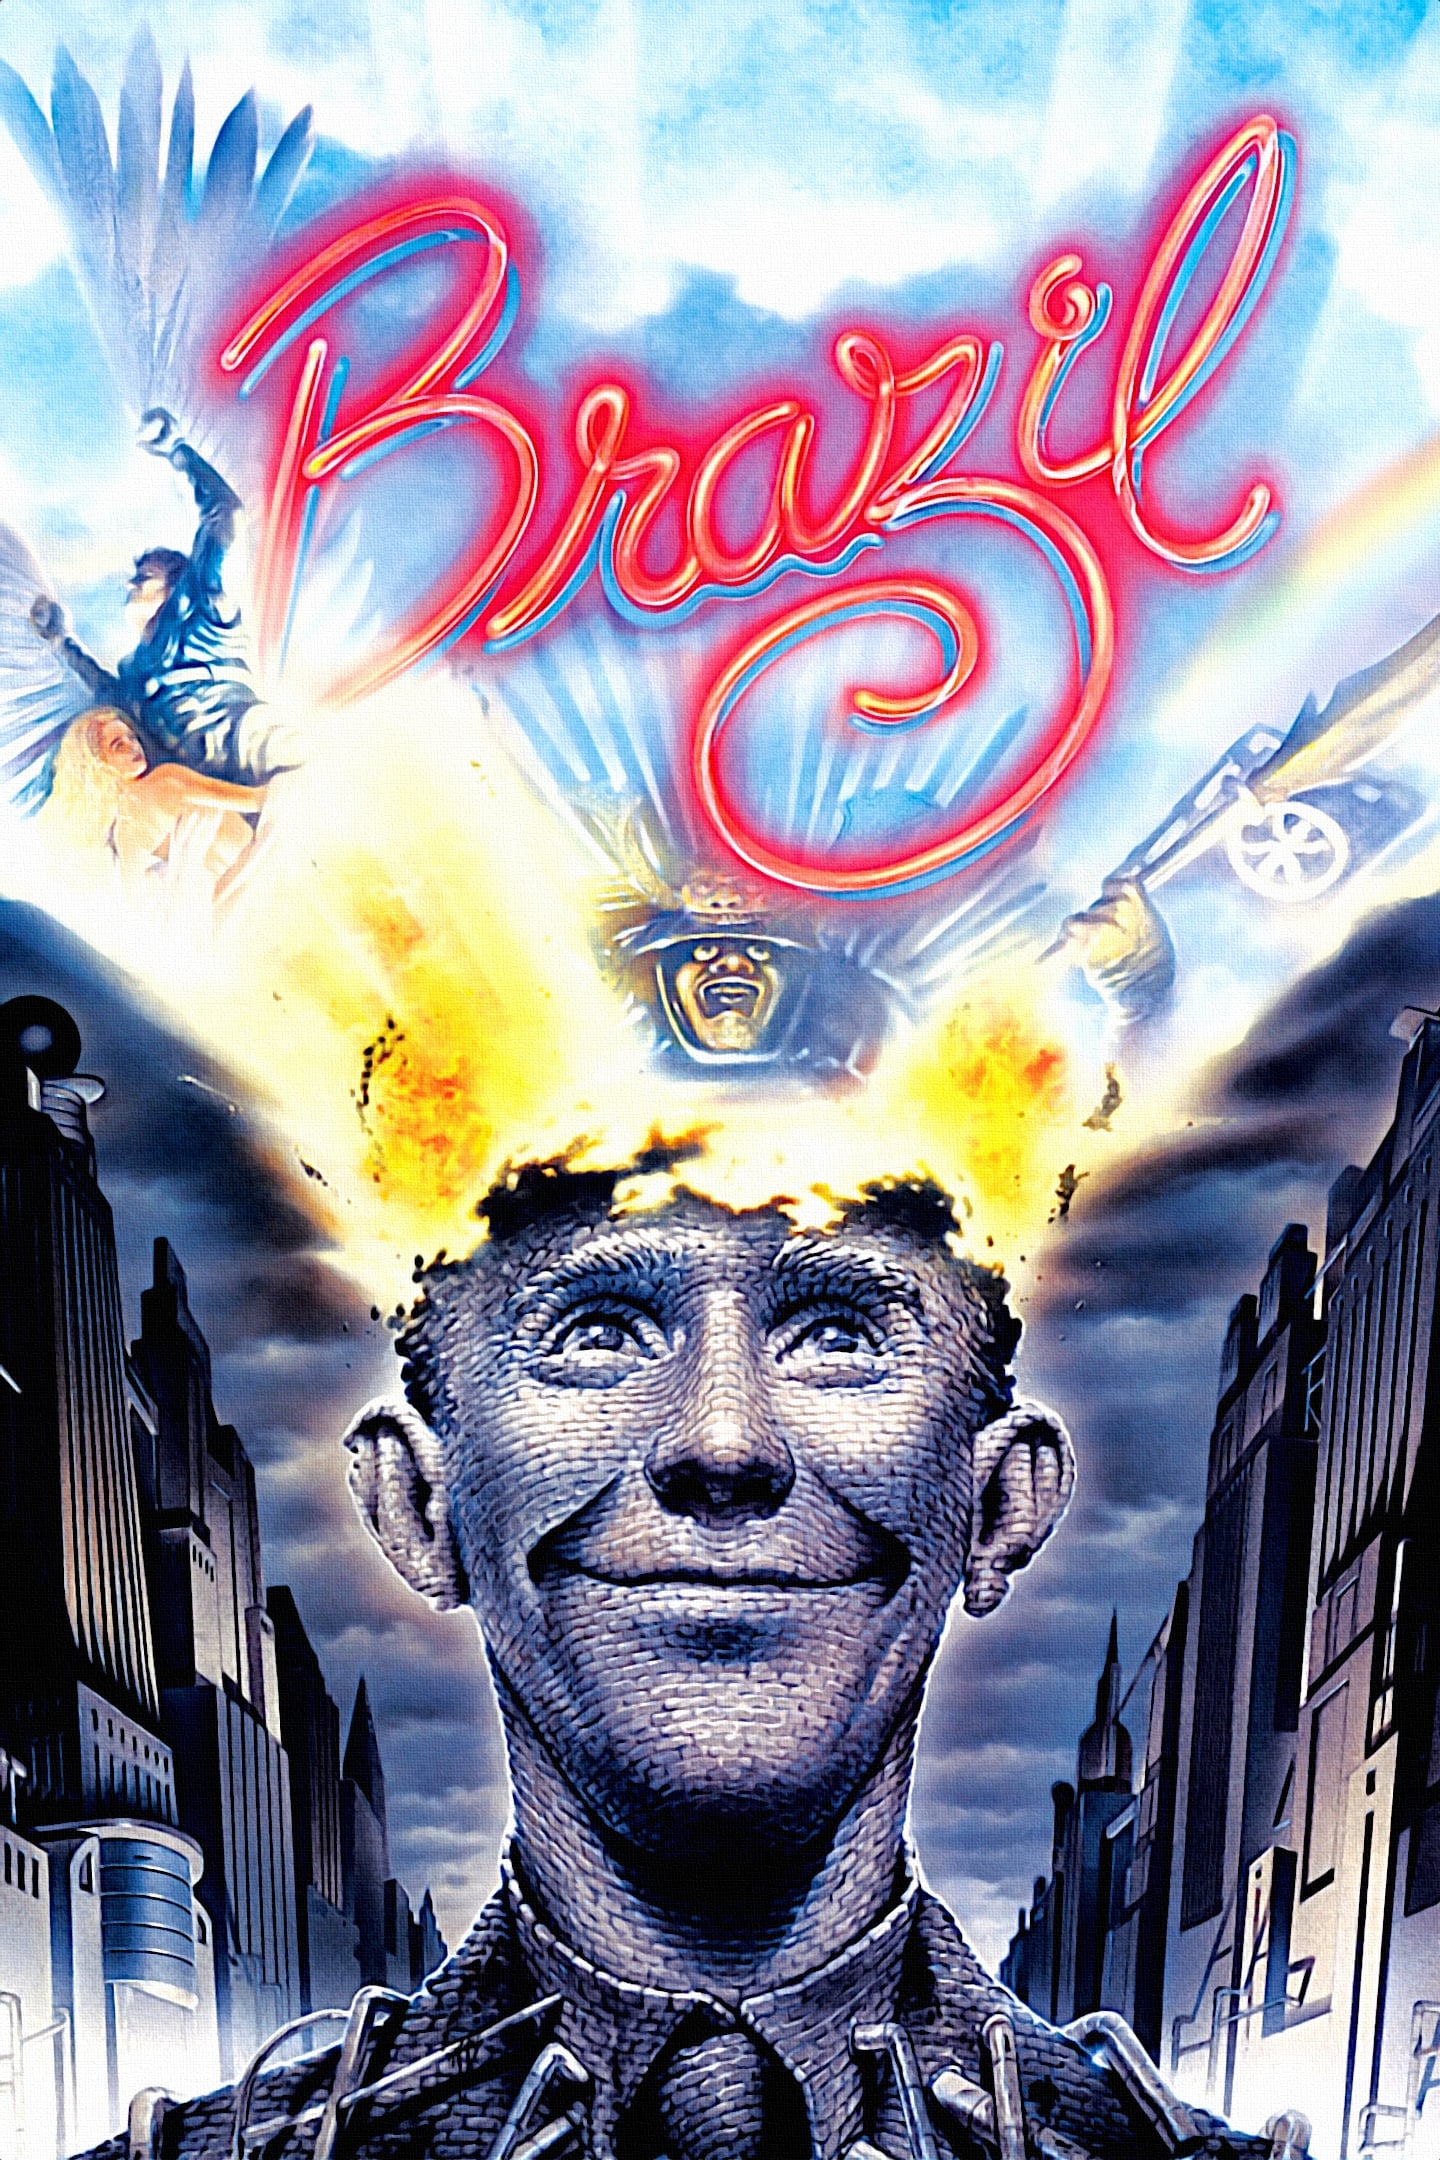 Plakat von "Brazil"